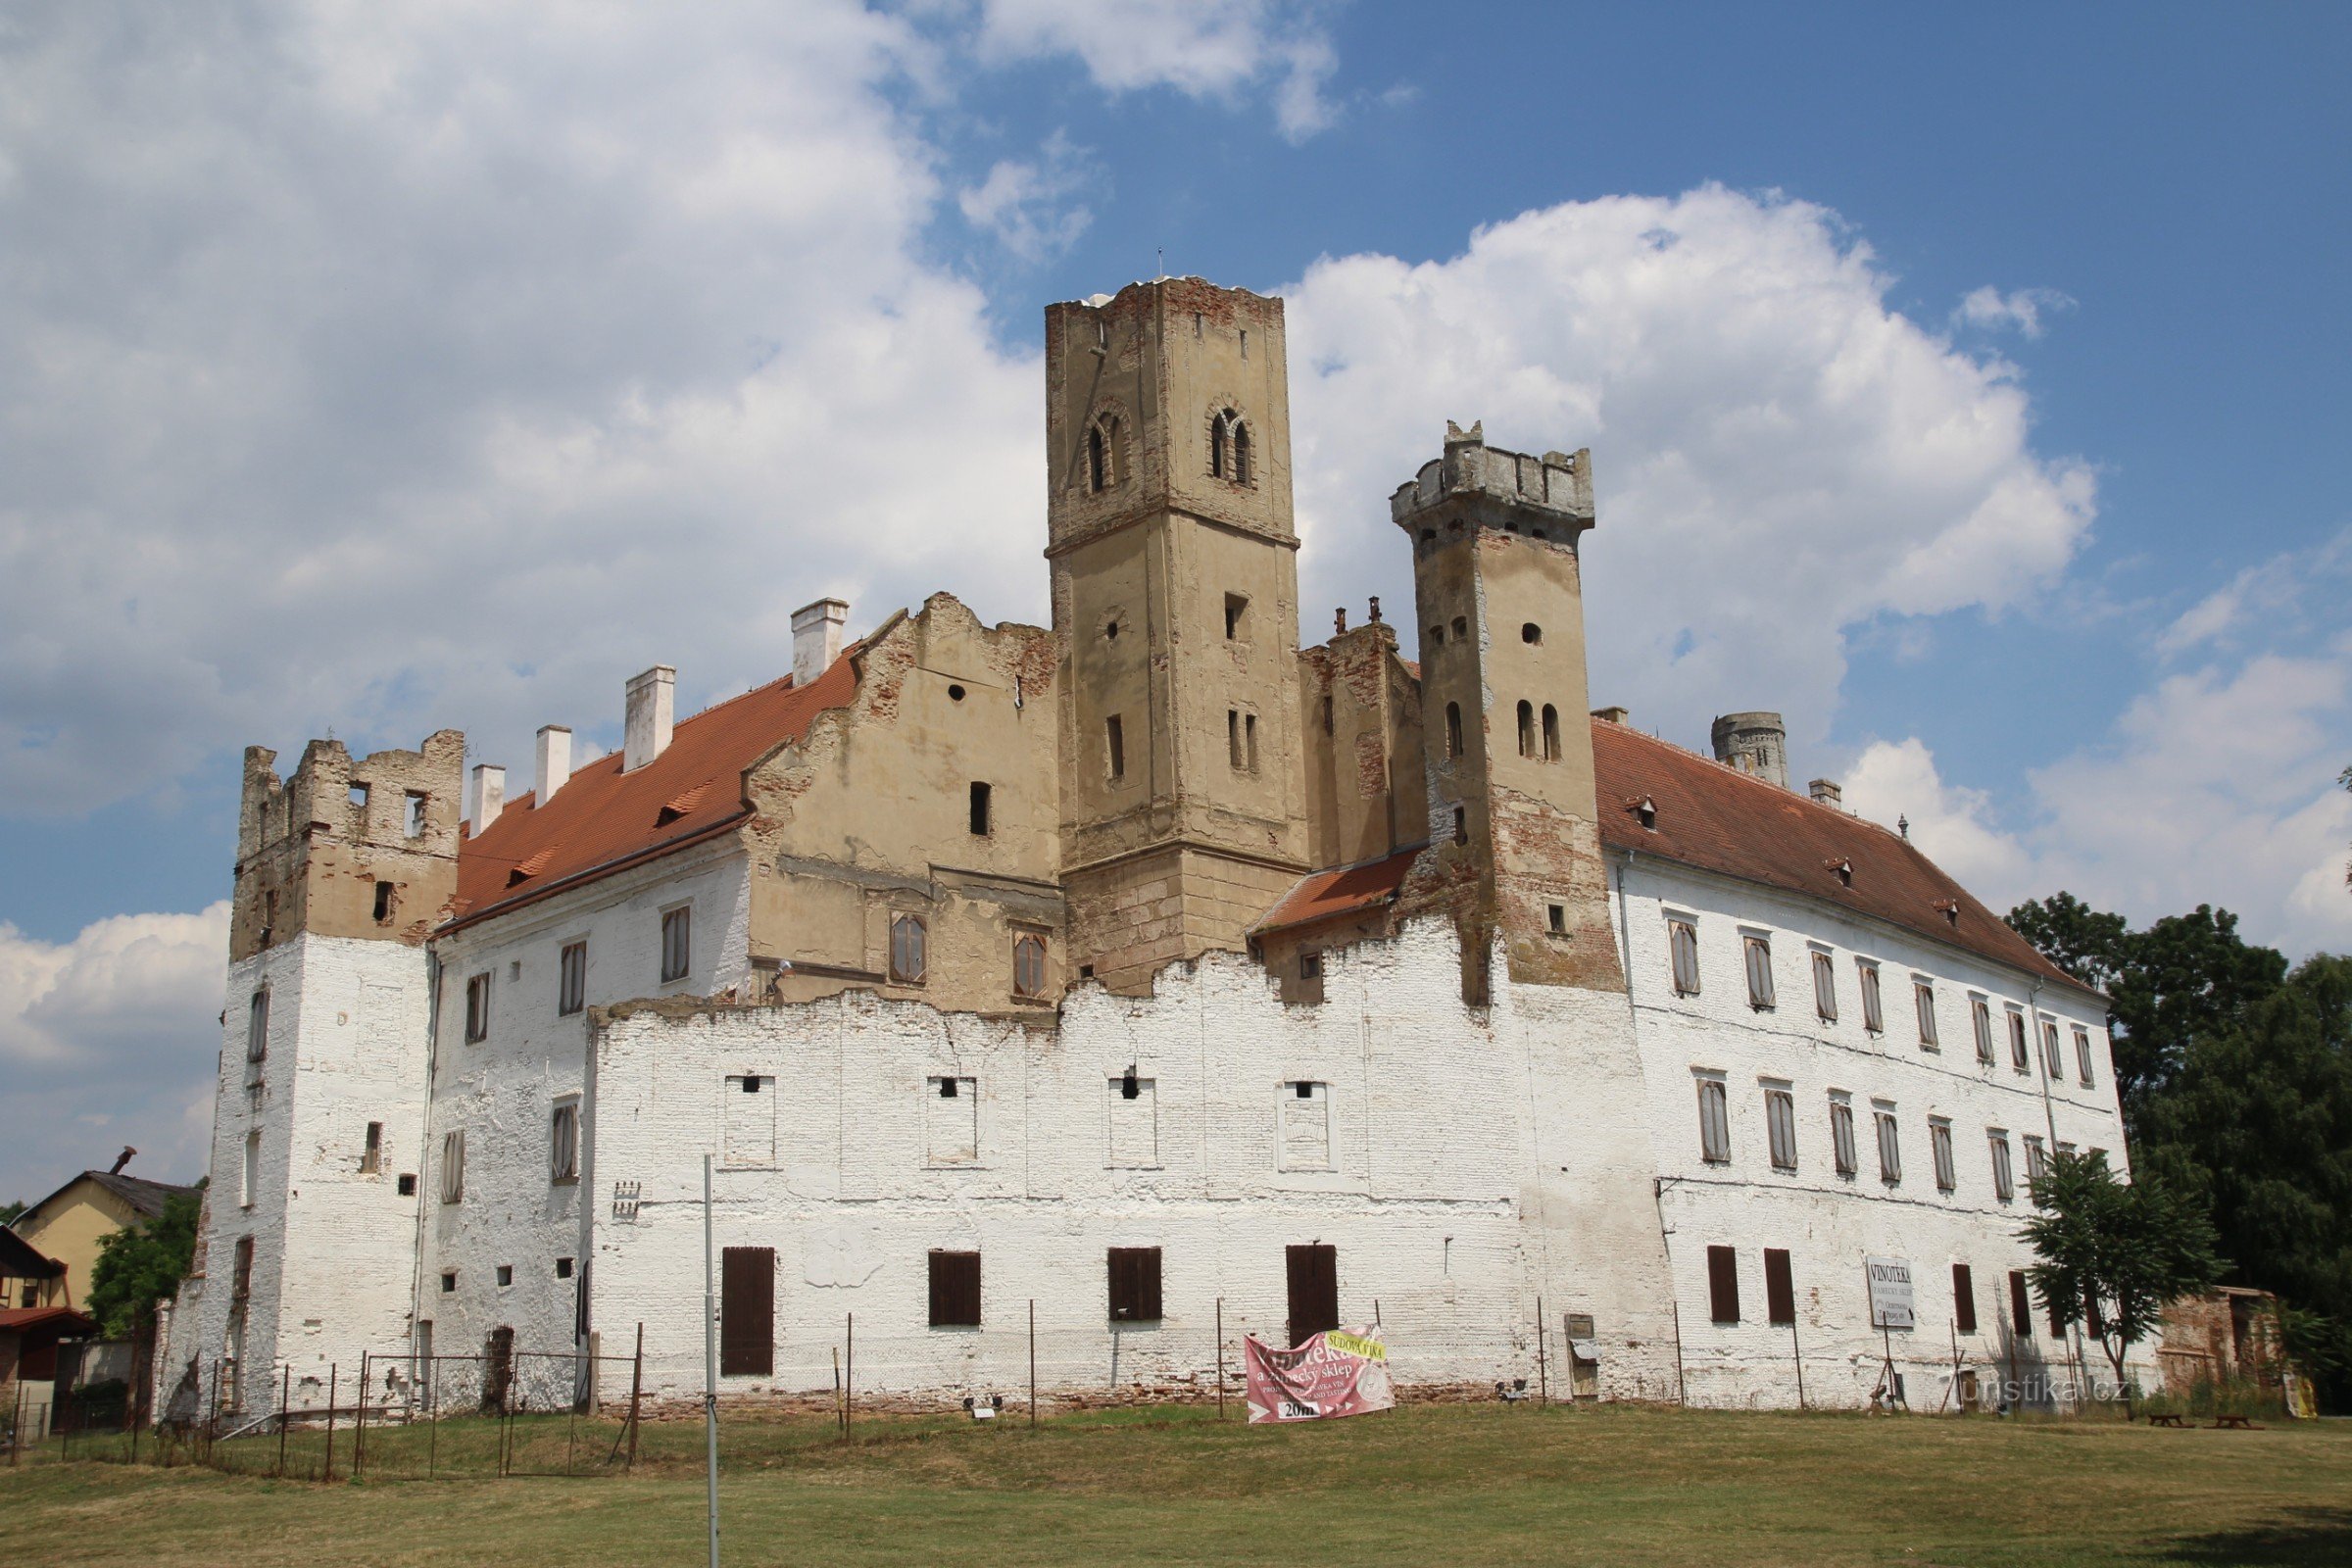 Näkymä Břeclav-linnalle puistosta, jossa on hallitseva näkötorni